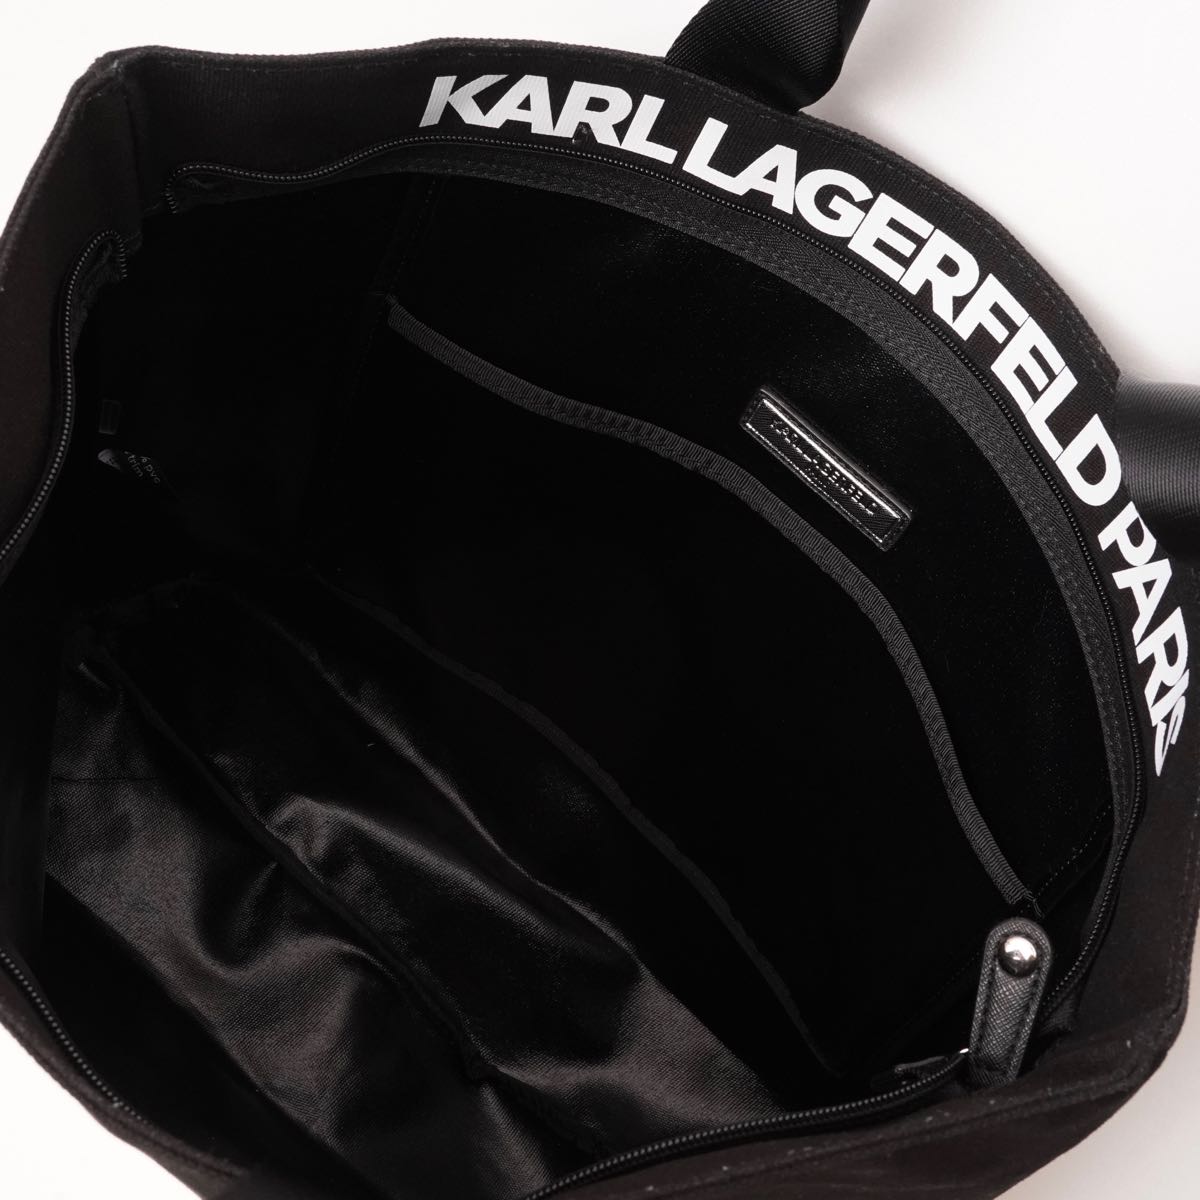 KARL LAGERFELD PARIS カールラガーフェルド ブラック キャンバストートバッグ BLACK CANVAS TOTE-BAG